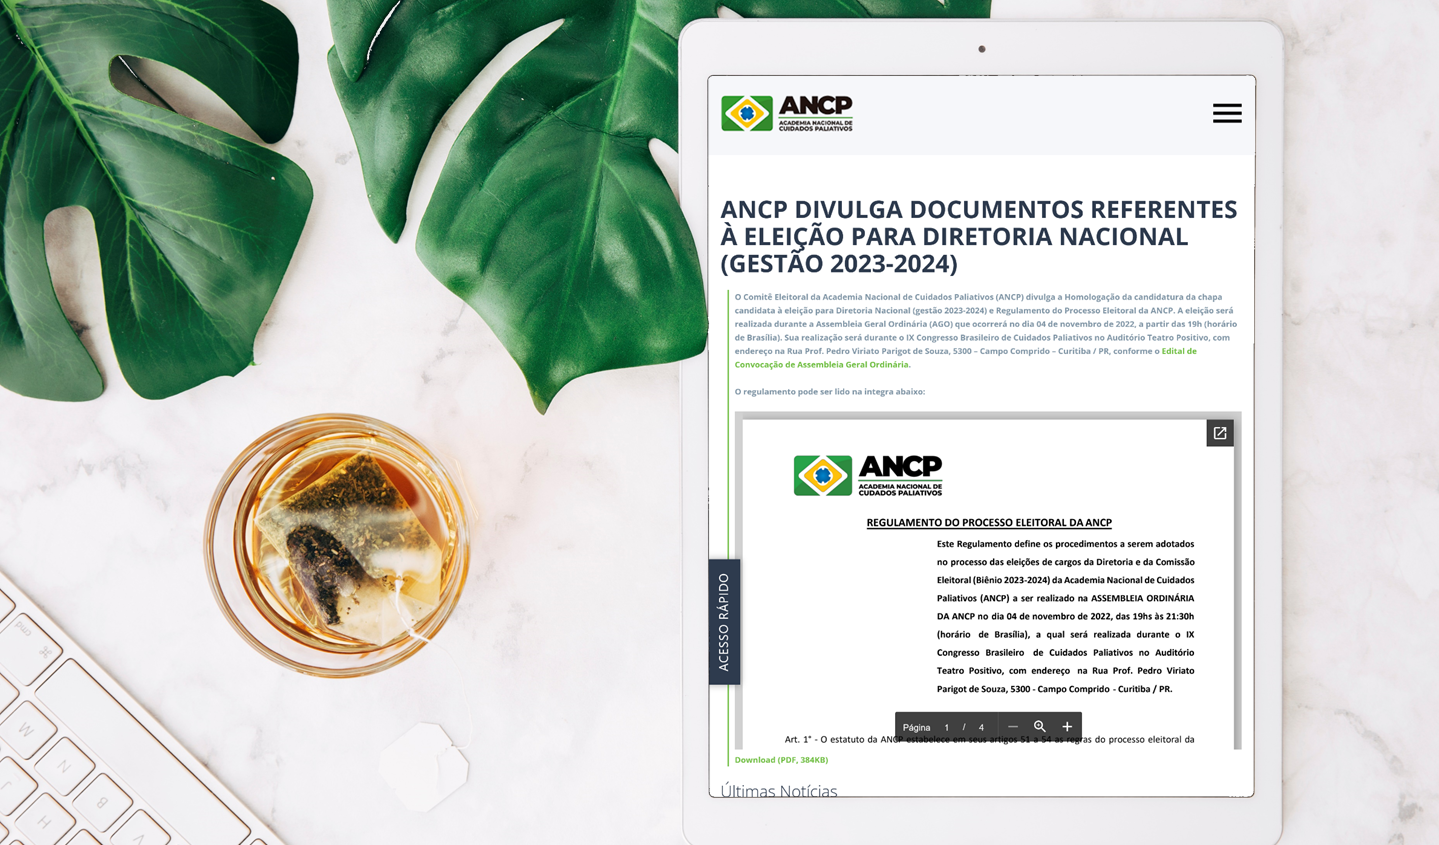 ANCP divulga documentos referentes à eleição para Diretoria Nacional (gestão 2023-2024)